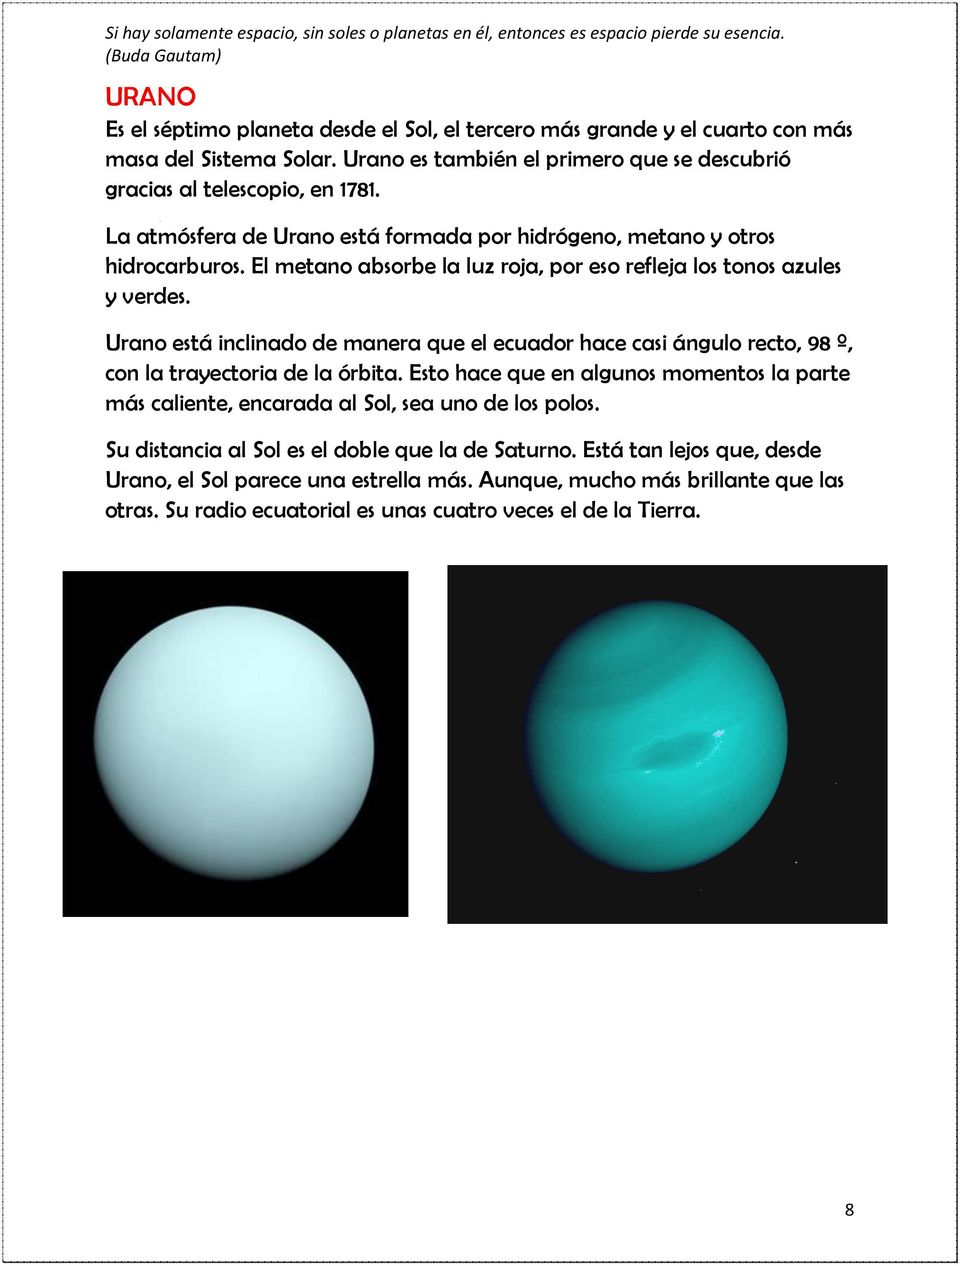 Urano está inclinado de manera que el ecuador hace casi ángulo recto, 98 º, con la trayectoria de la órbita.